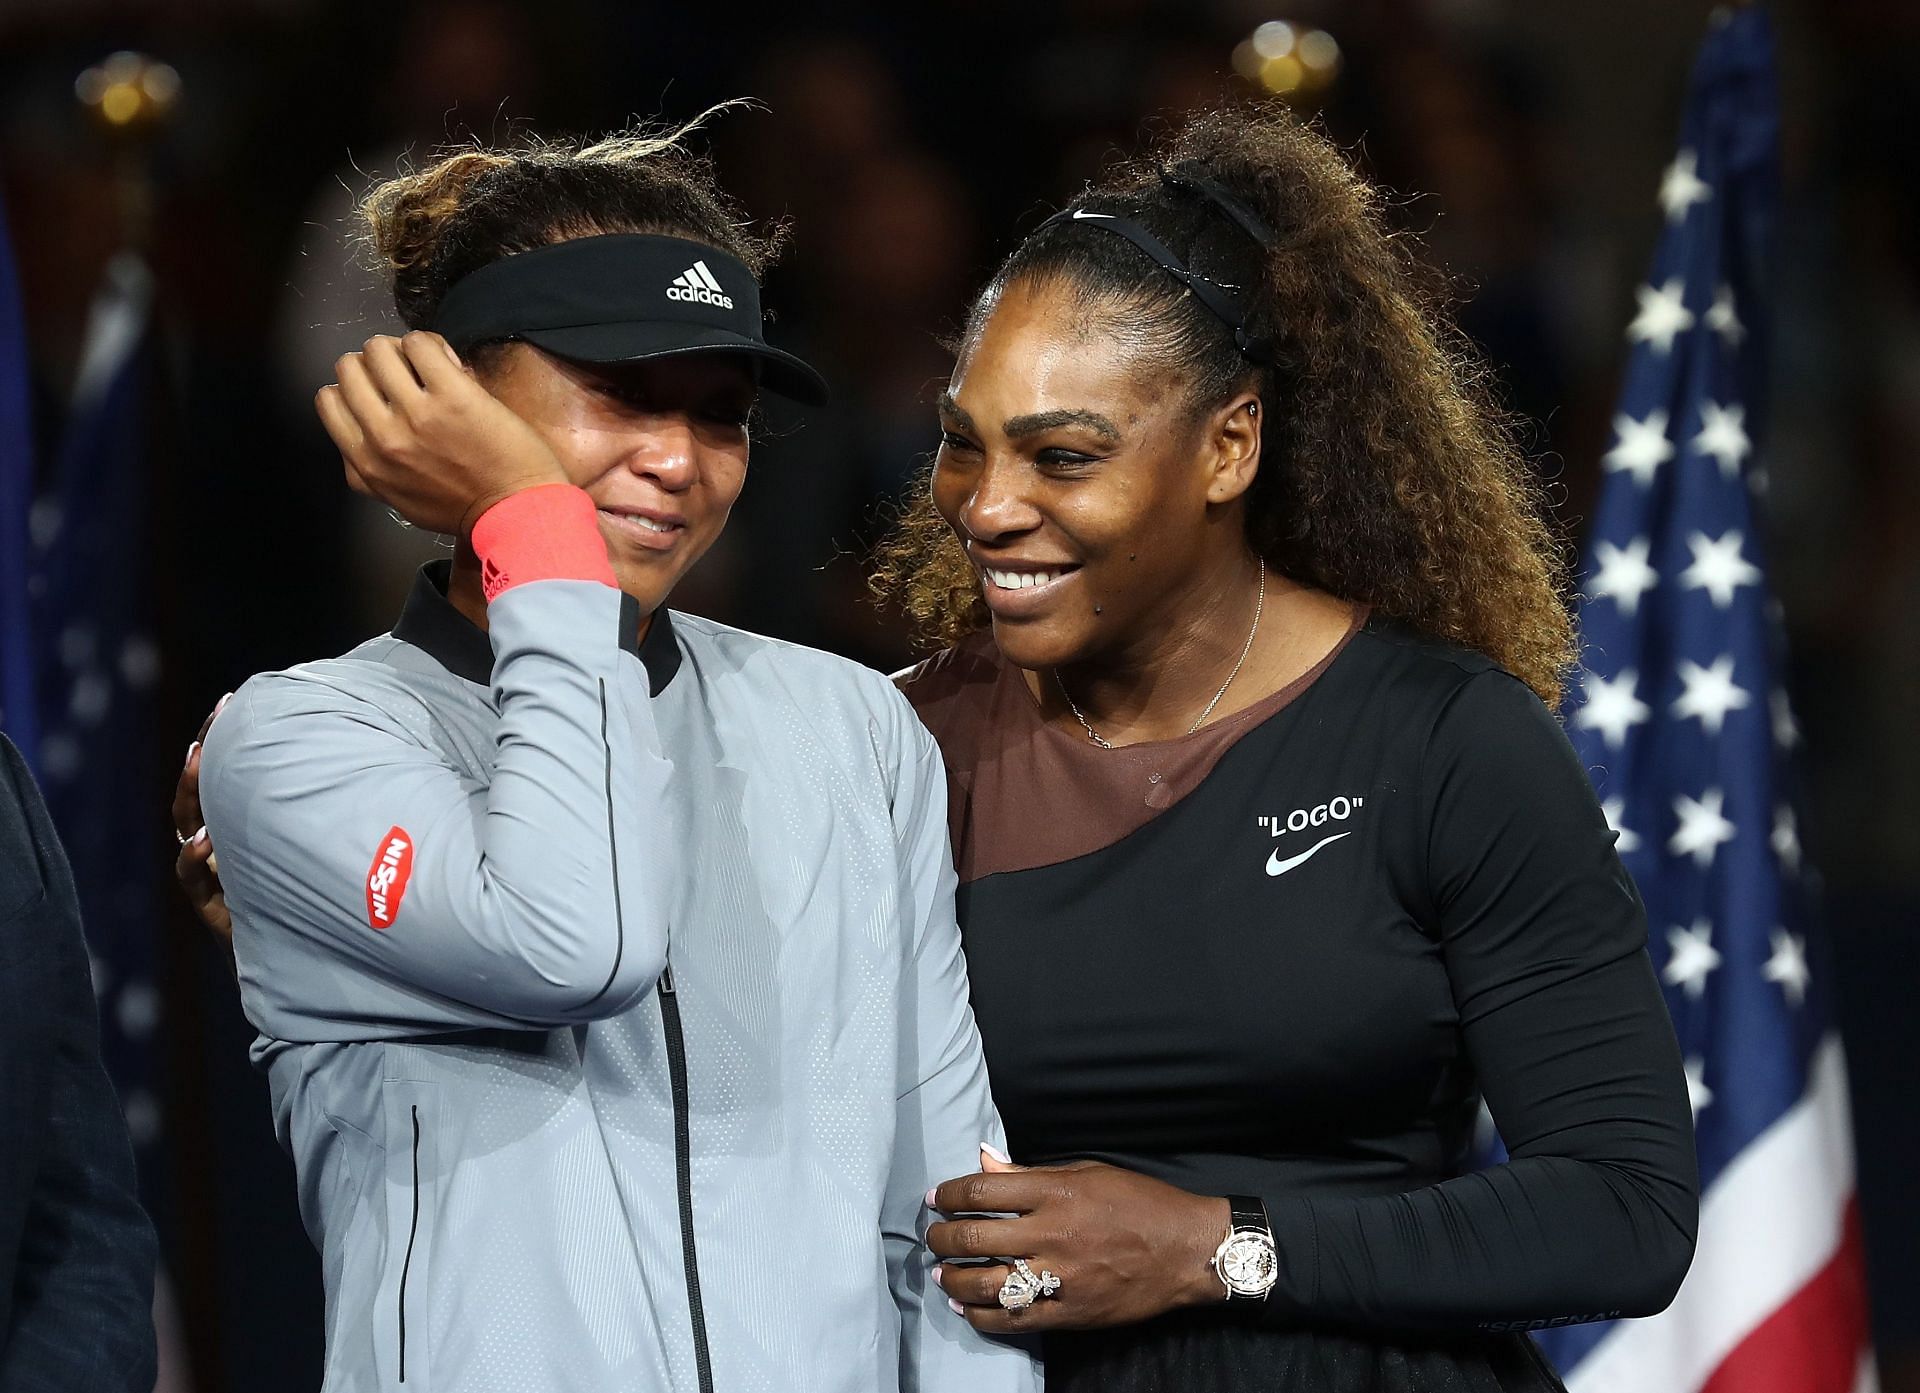 Naomi Osaka and Serena Williams at thr 2018 US Open.